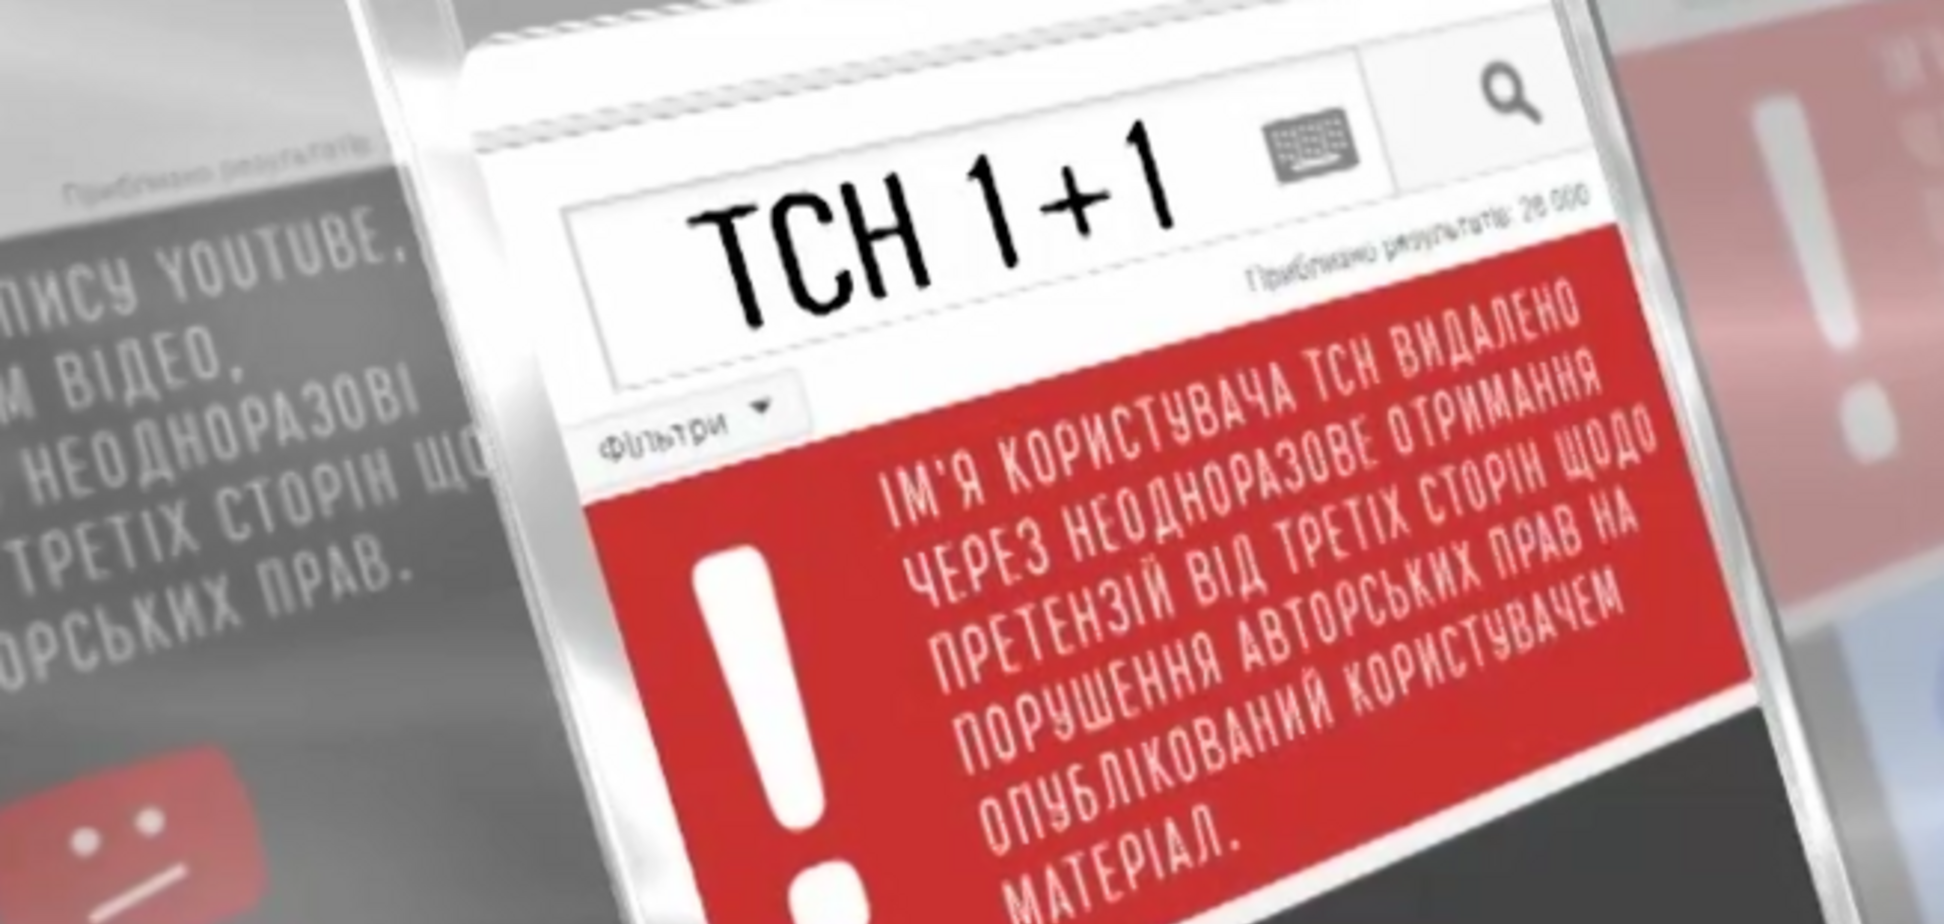 Московский офис YouTube заблокировал канал ТСН по требованию сепаратистов 